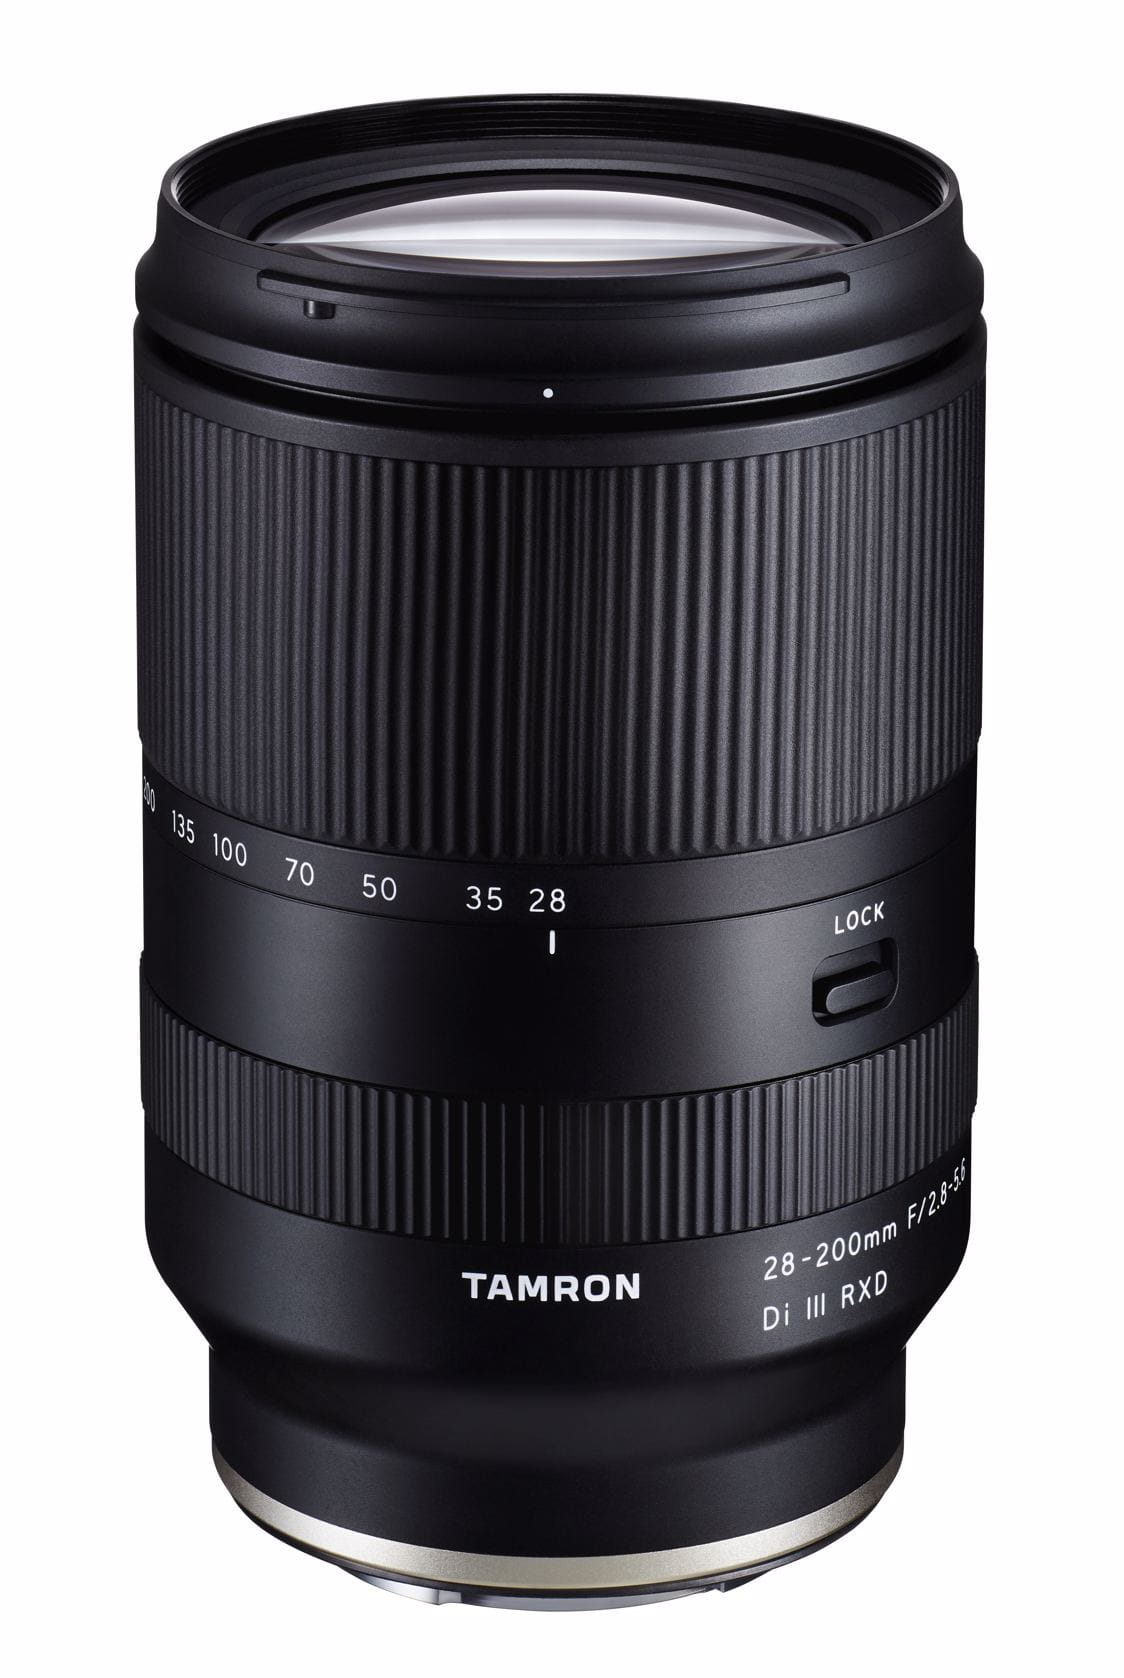 Tamron 28-200mm f 2.8-5.6 Di III RXD Sony E